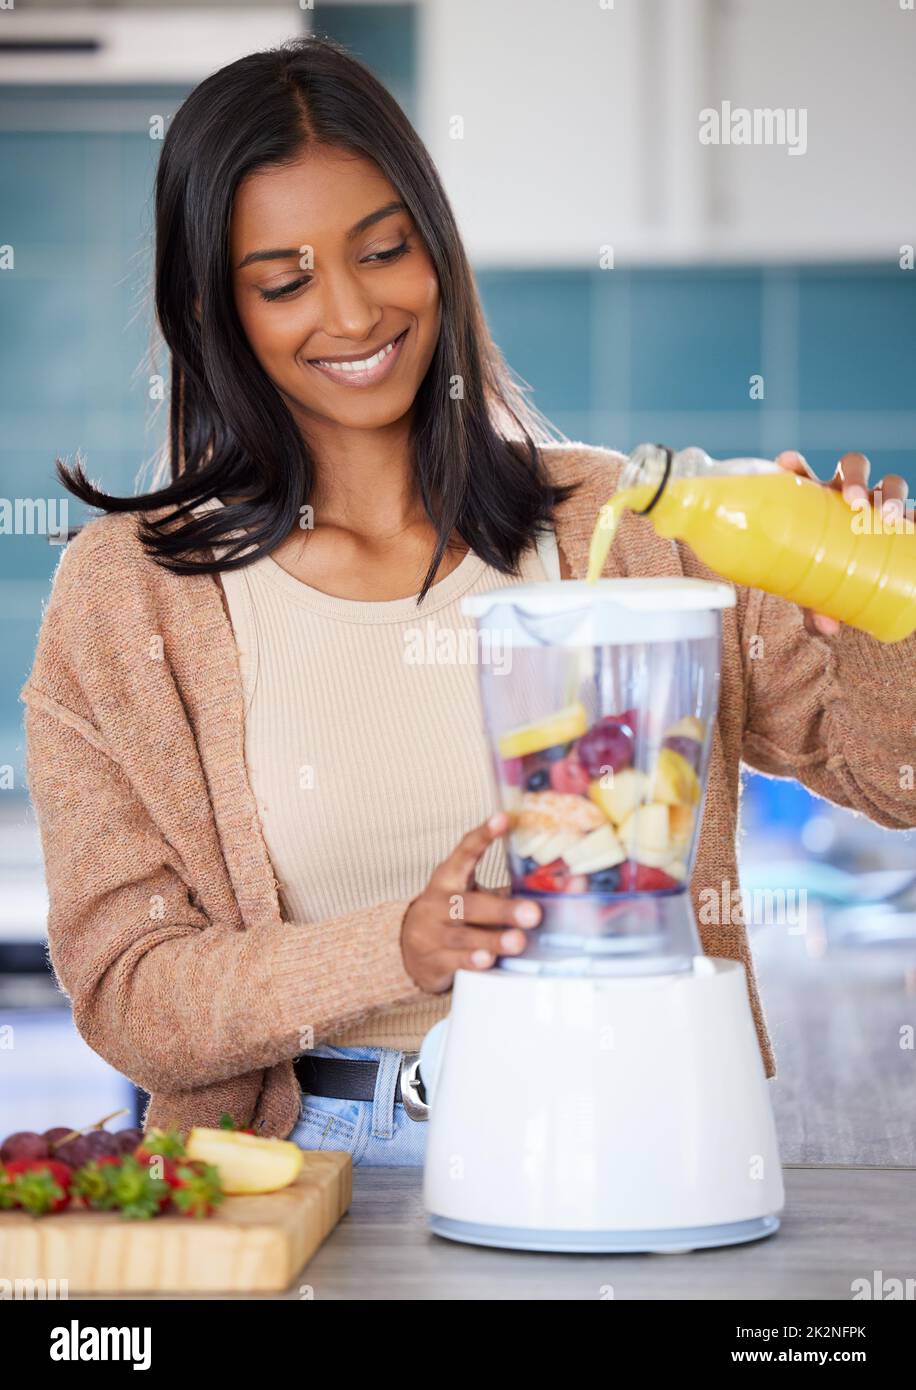 Ein köstliches Getränk in nur wenigen Minuten aufschlagen. Aufnahme einer jungen Frau, die zu Hause einen gesunden Smoothie vorbereitet. Stockfoto